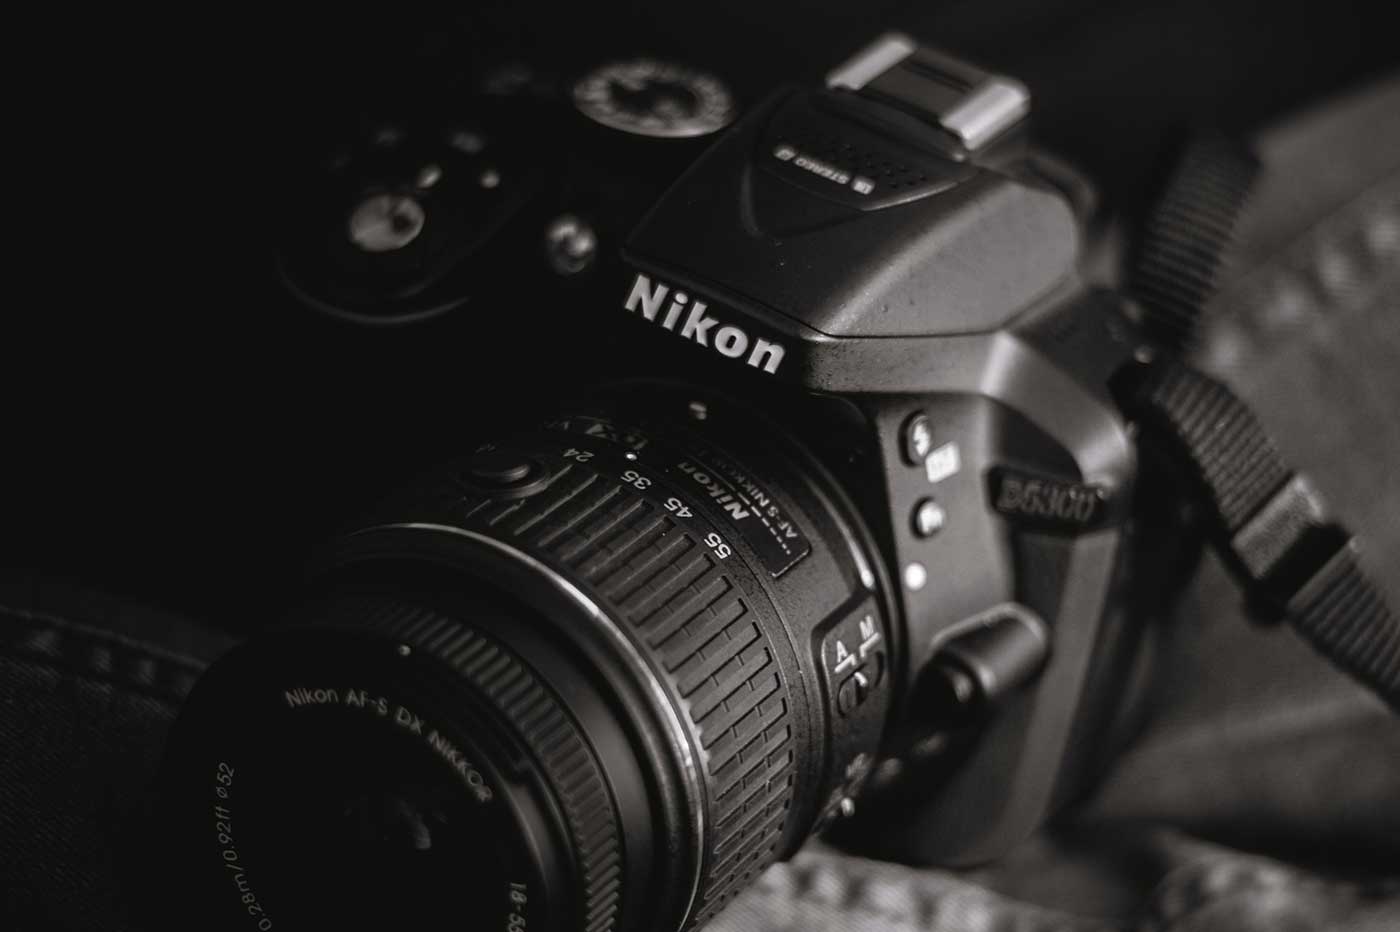 Nikon appareil photo